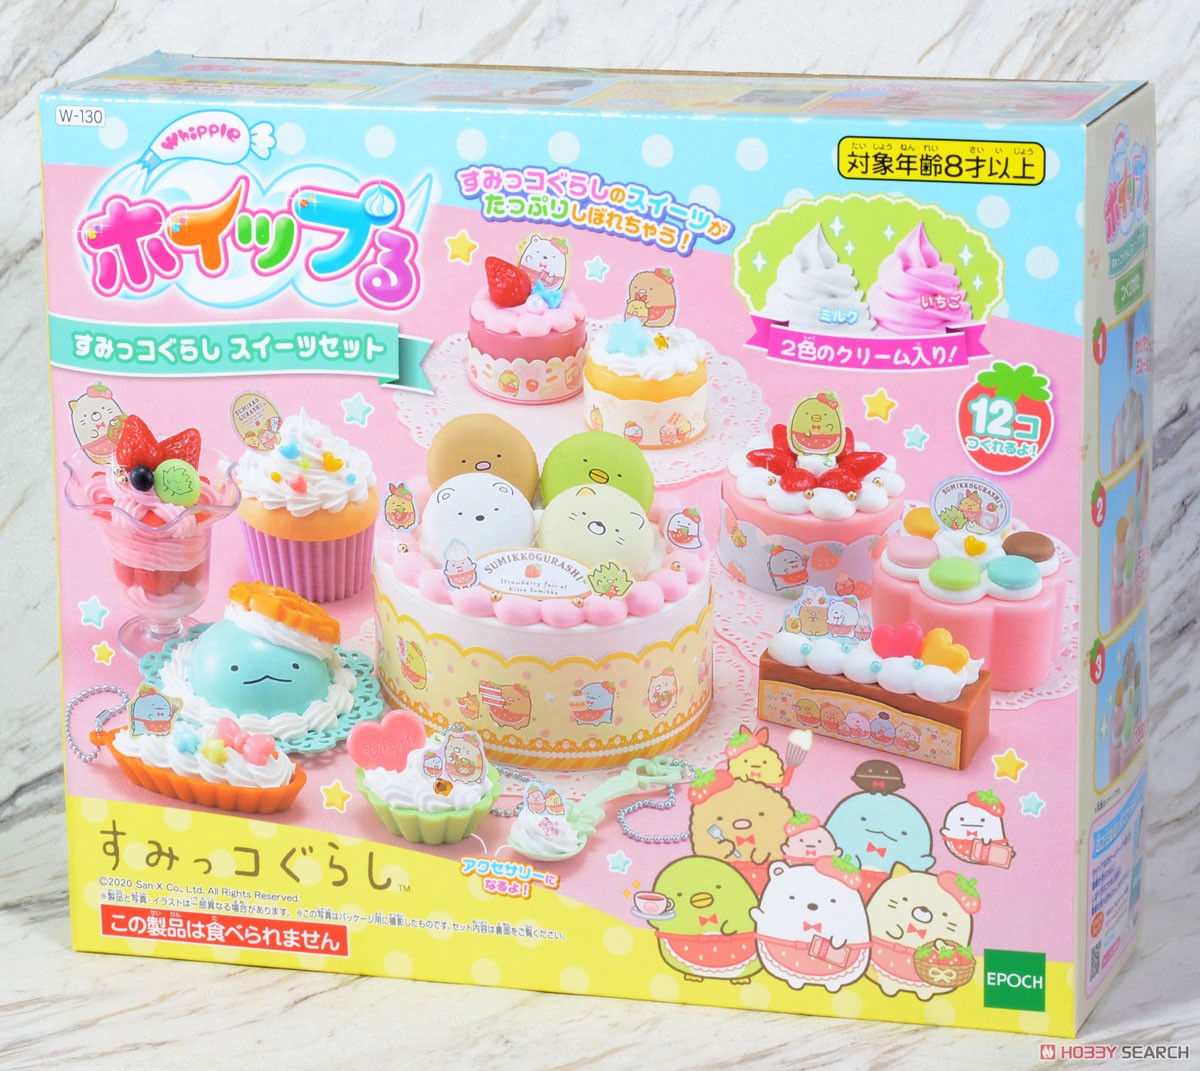 Whipple W-130 Sumikko Gurashi Sweets set (Interactive Toy) Package2